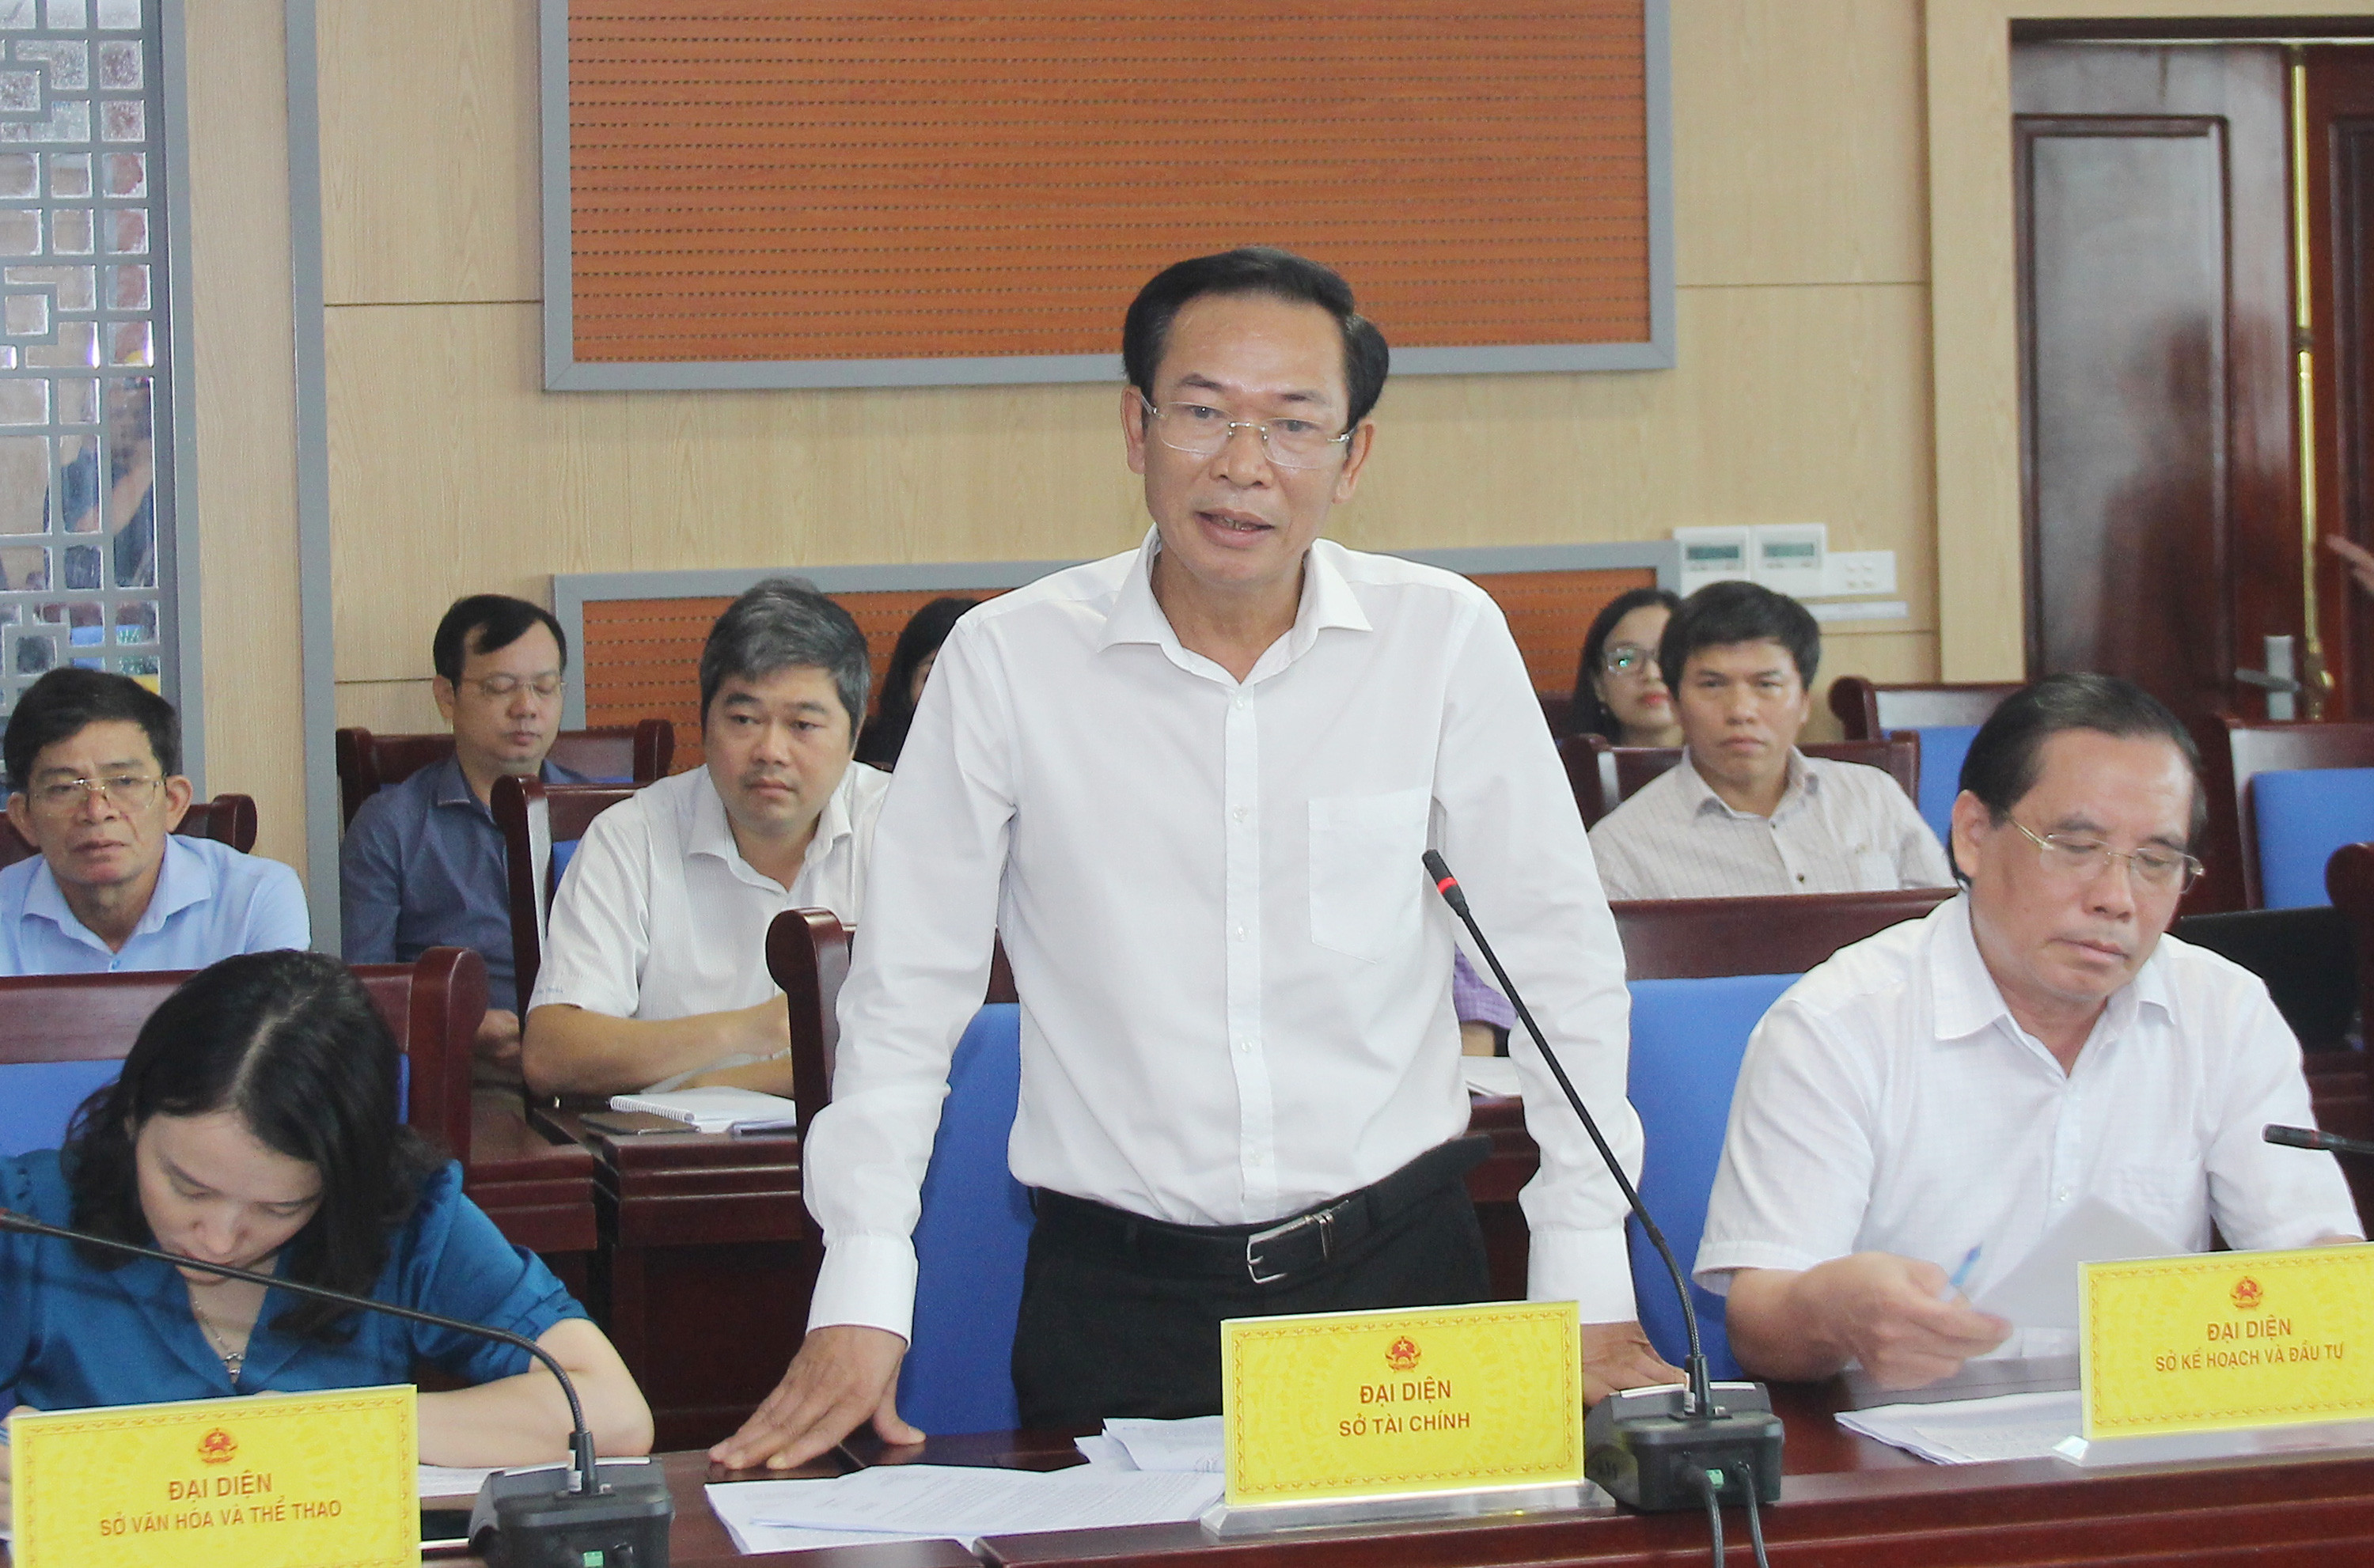 Giám đốc Sở Tài chính - Nguyễn Xuân Hải cho rằng cần tìm giải pháp chung cho các dự án, tránh đổ lỗi trách nhiệm cho nhau. Ảnh: Mai Hoa